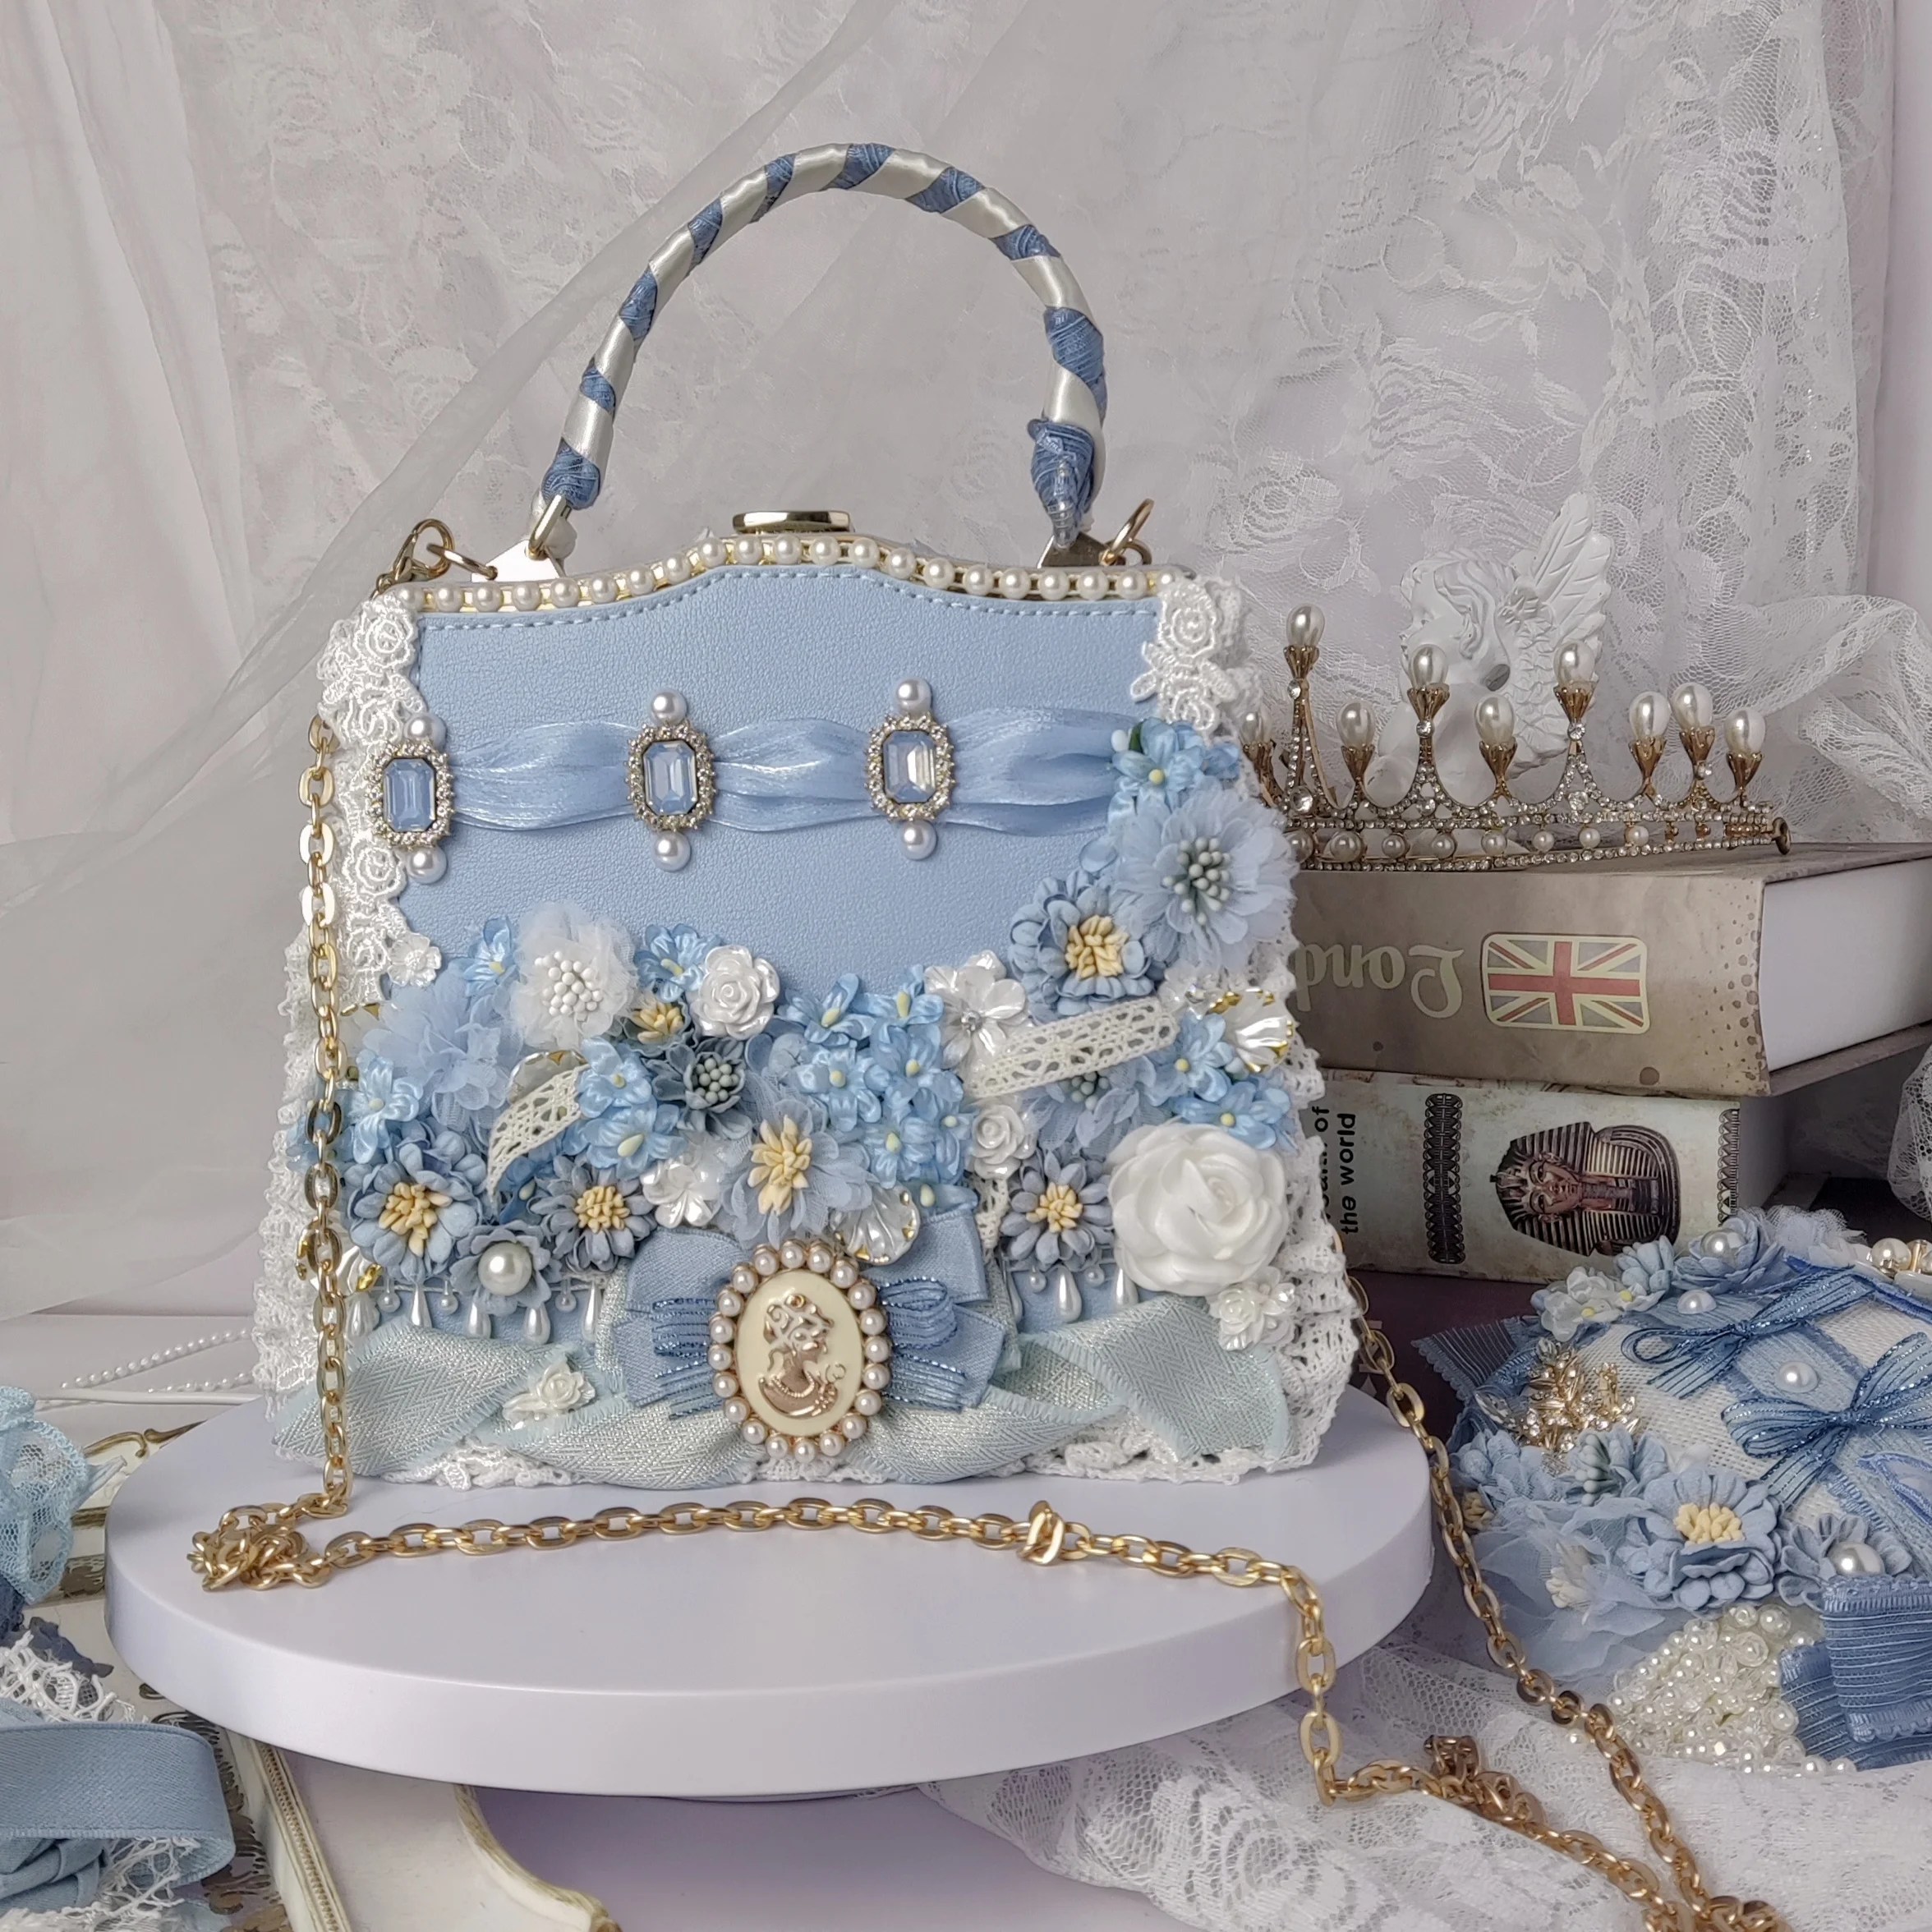 [Original] Handmade Gorgeous Flower Wedding Cla Series Blue Handbag Retro Crossbody